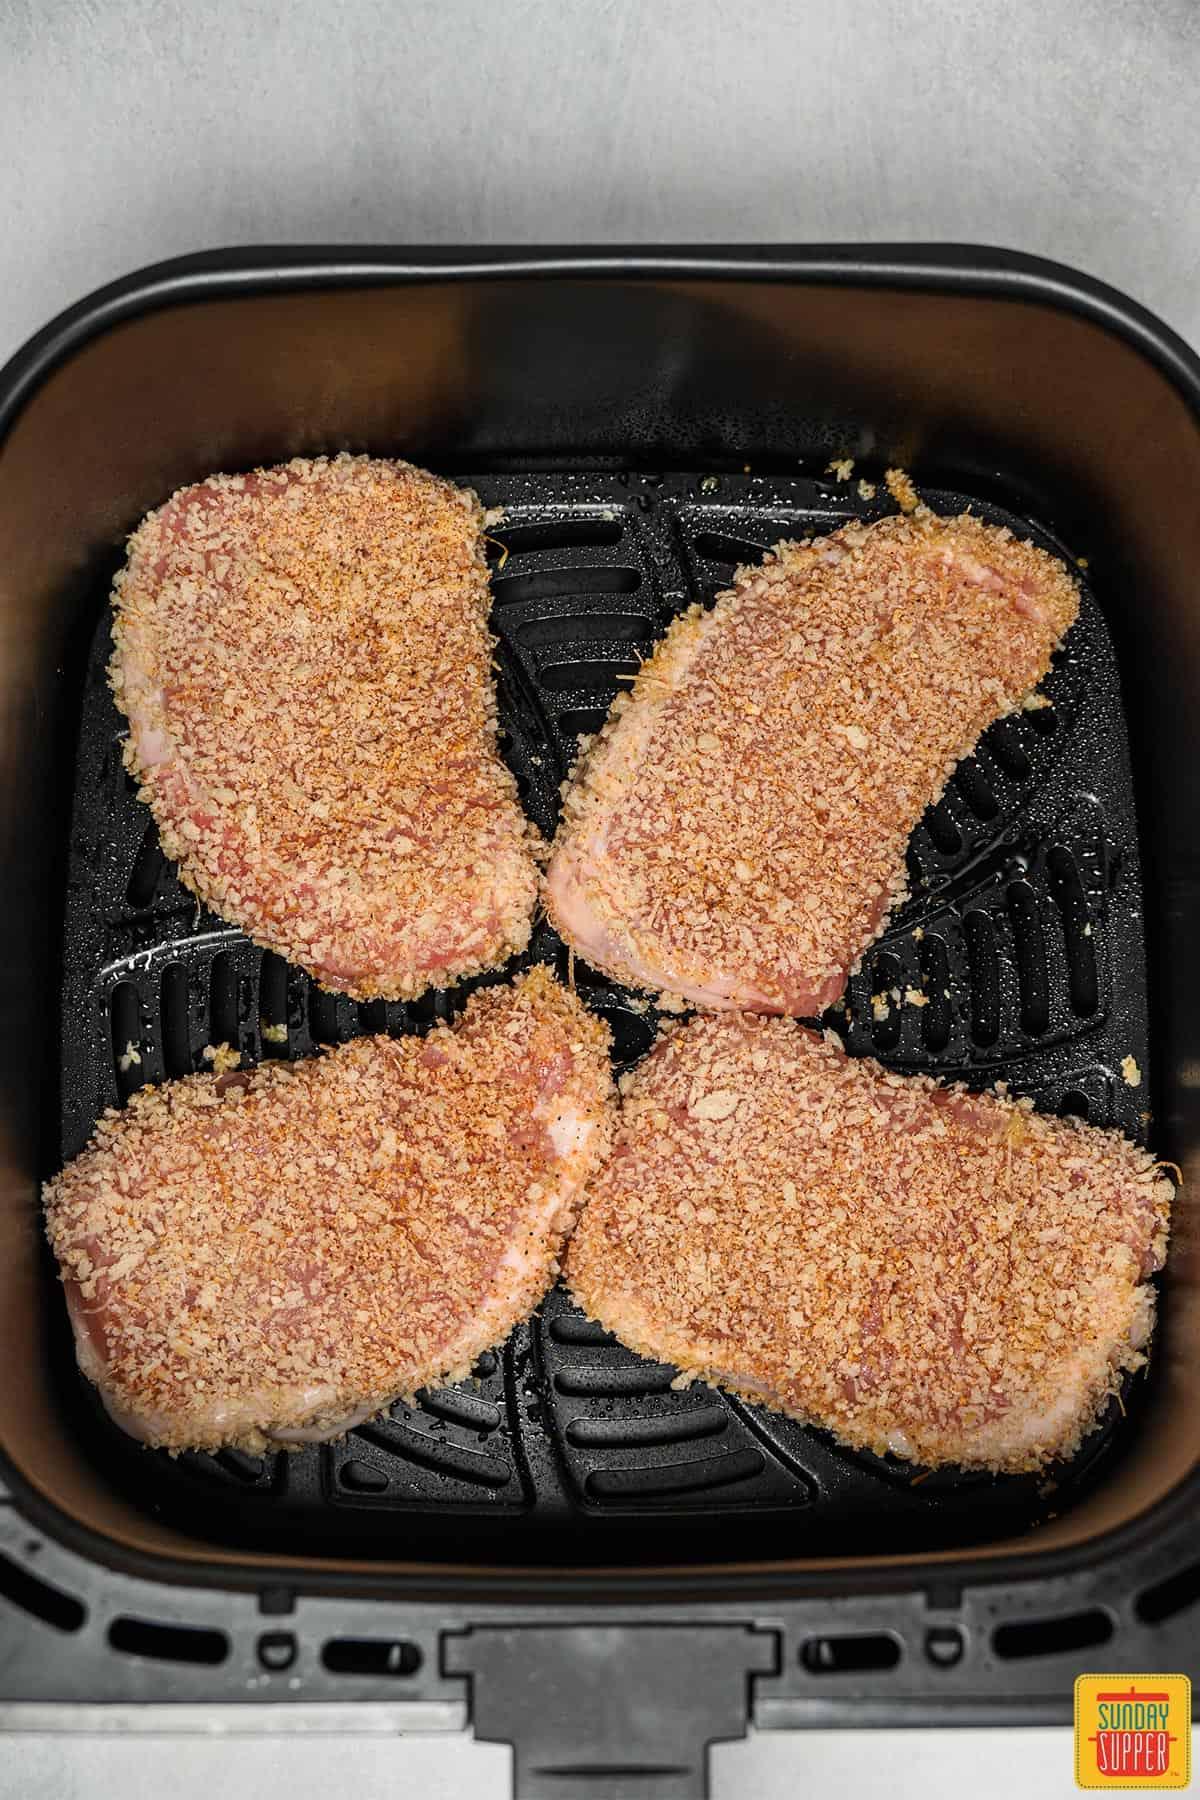 Breaded pork chops going inside the air fryer